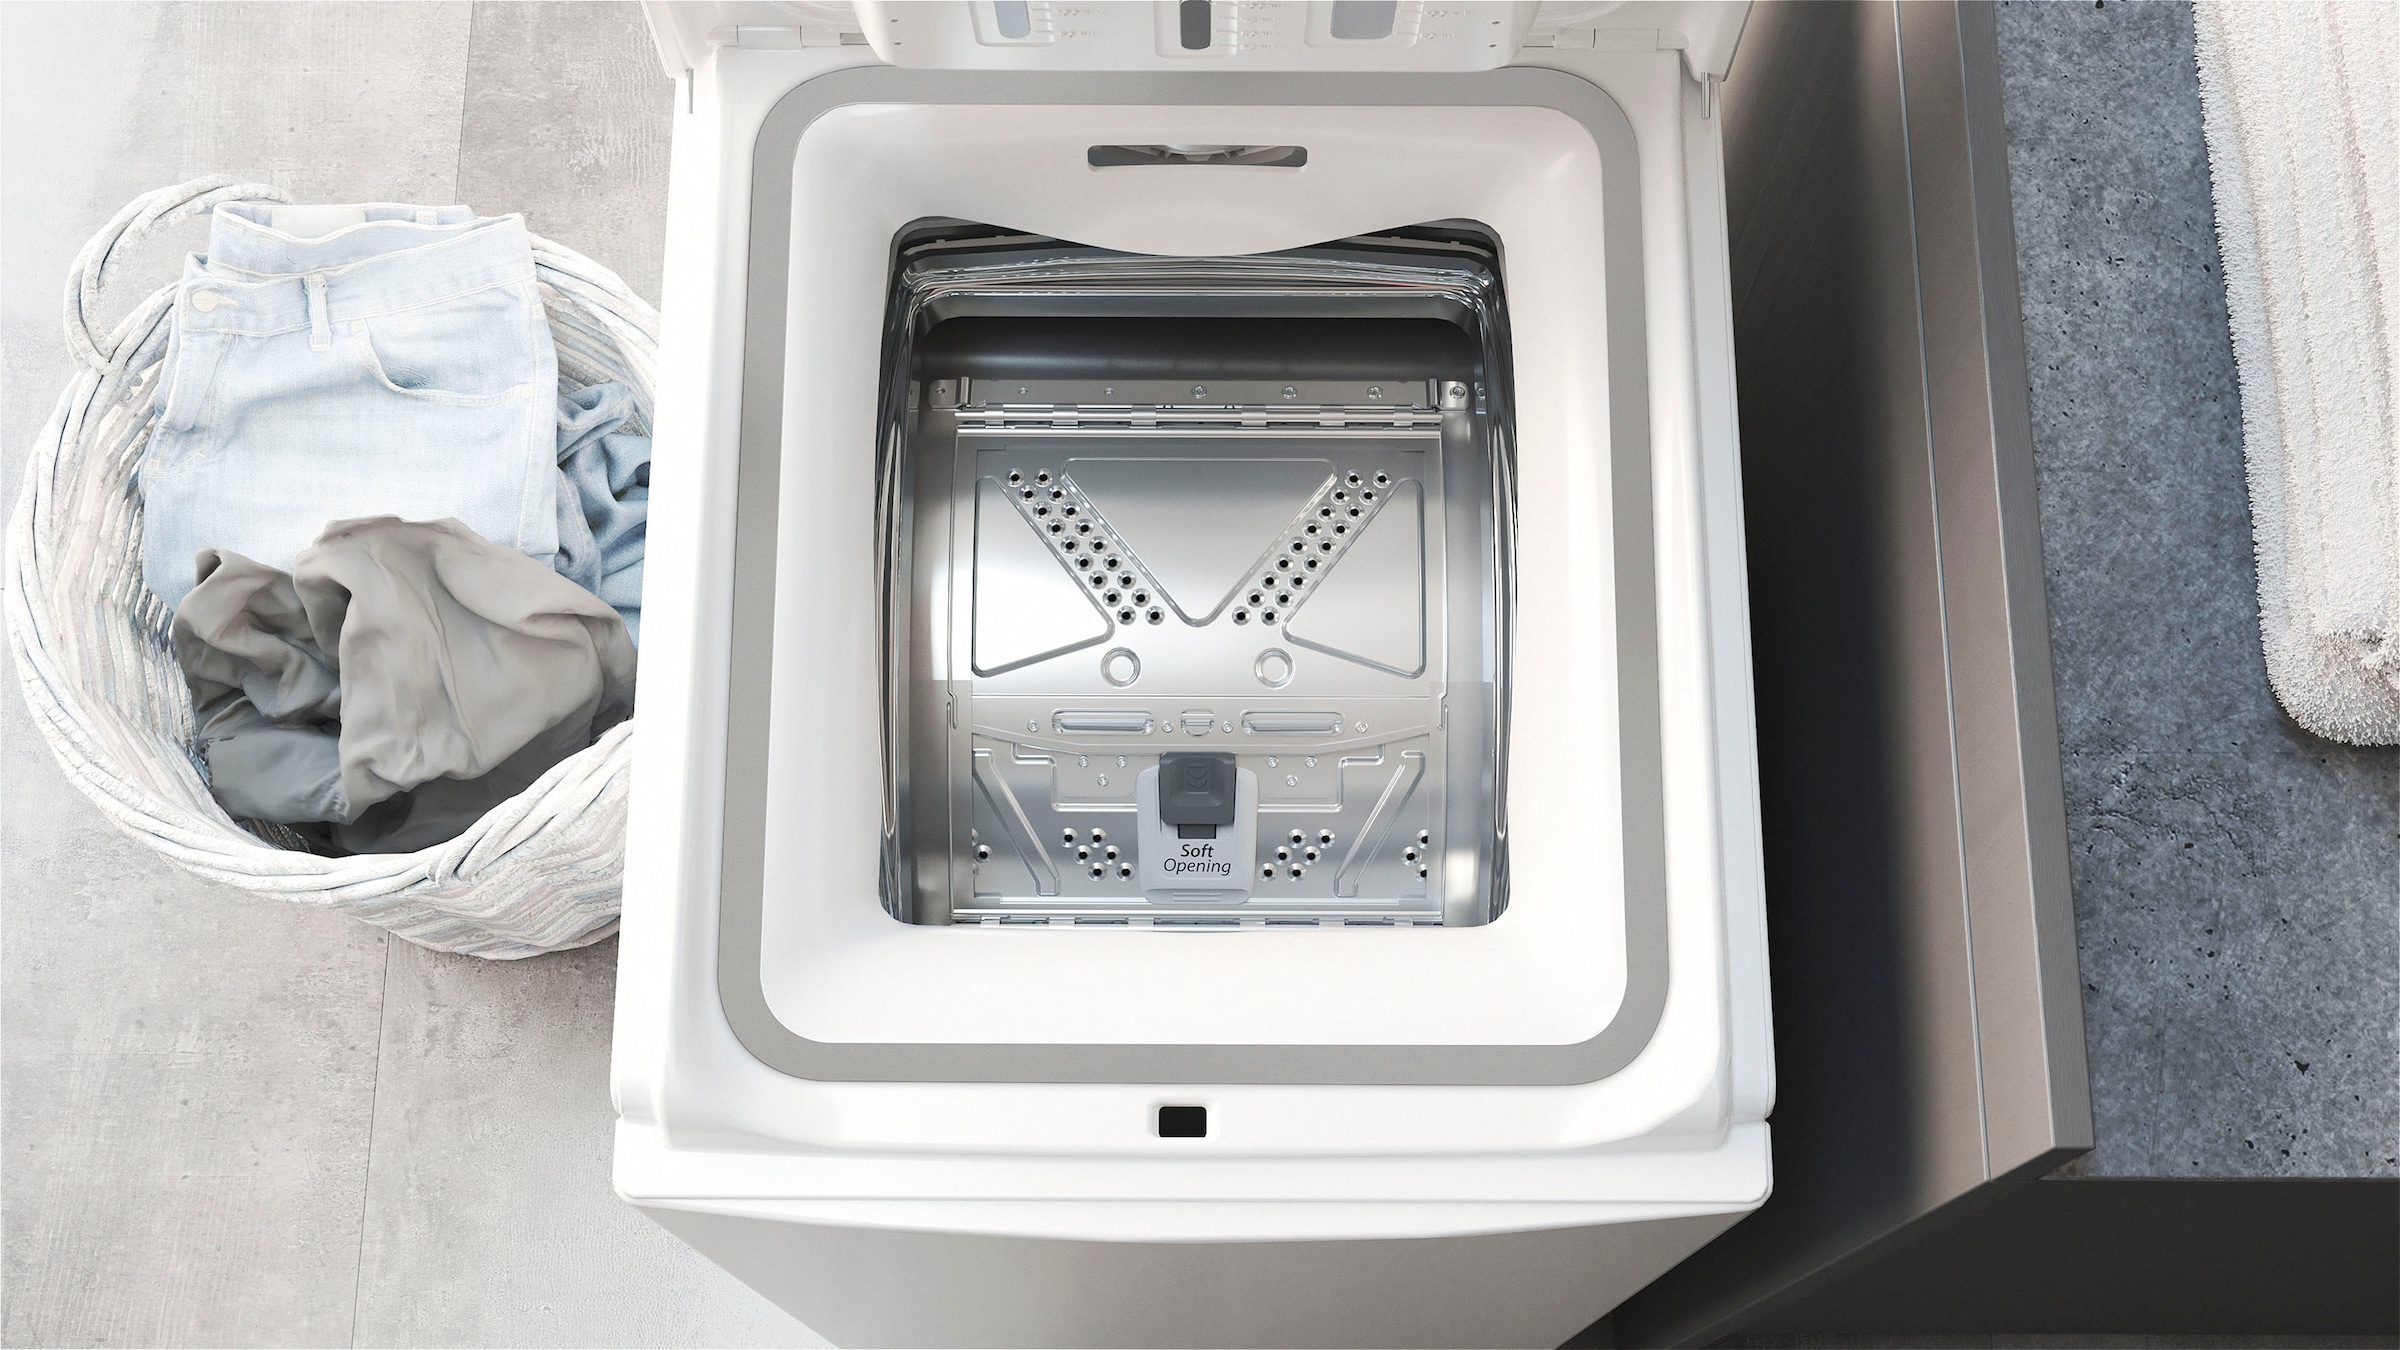 BAUKNECHT Waschmaschine Toplader »WAT Eco 712 B3«, WAT Eco 712 B3, 7 kg,  1200 U/min jetzt bei OTTO